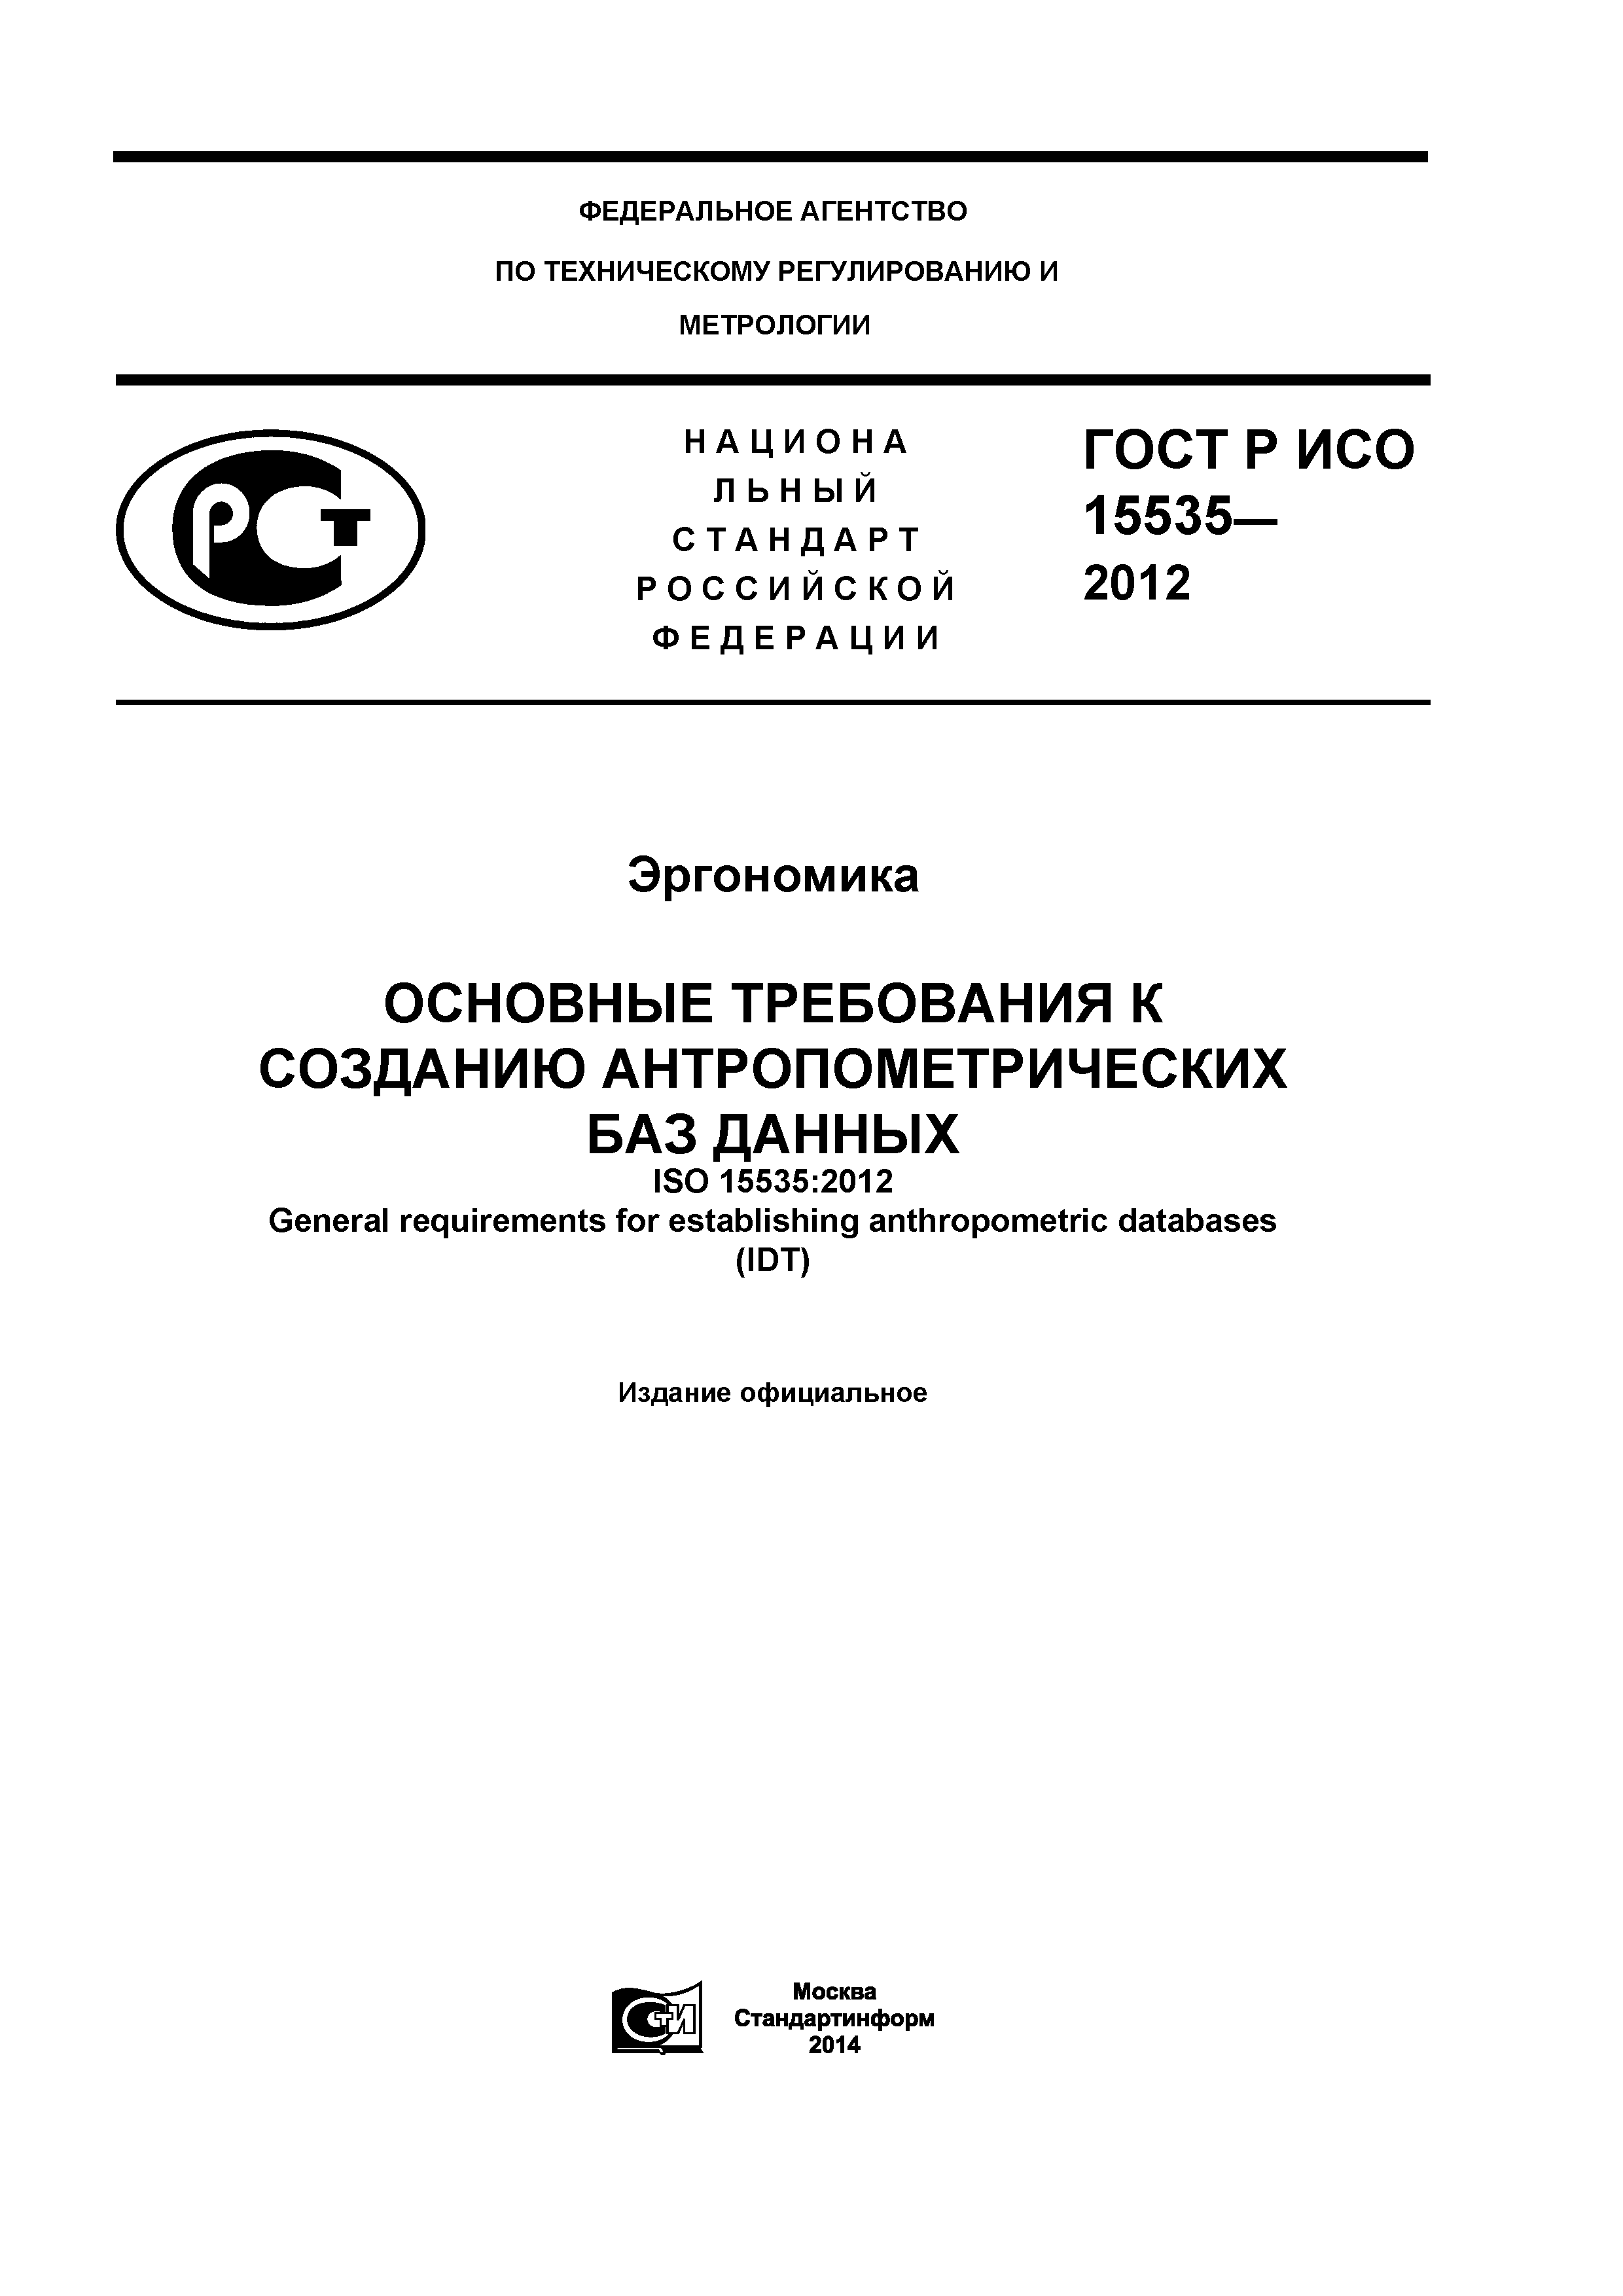 ГОСТ Р ИСО 15535-2012